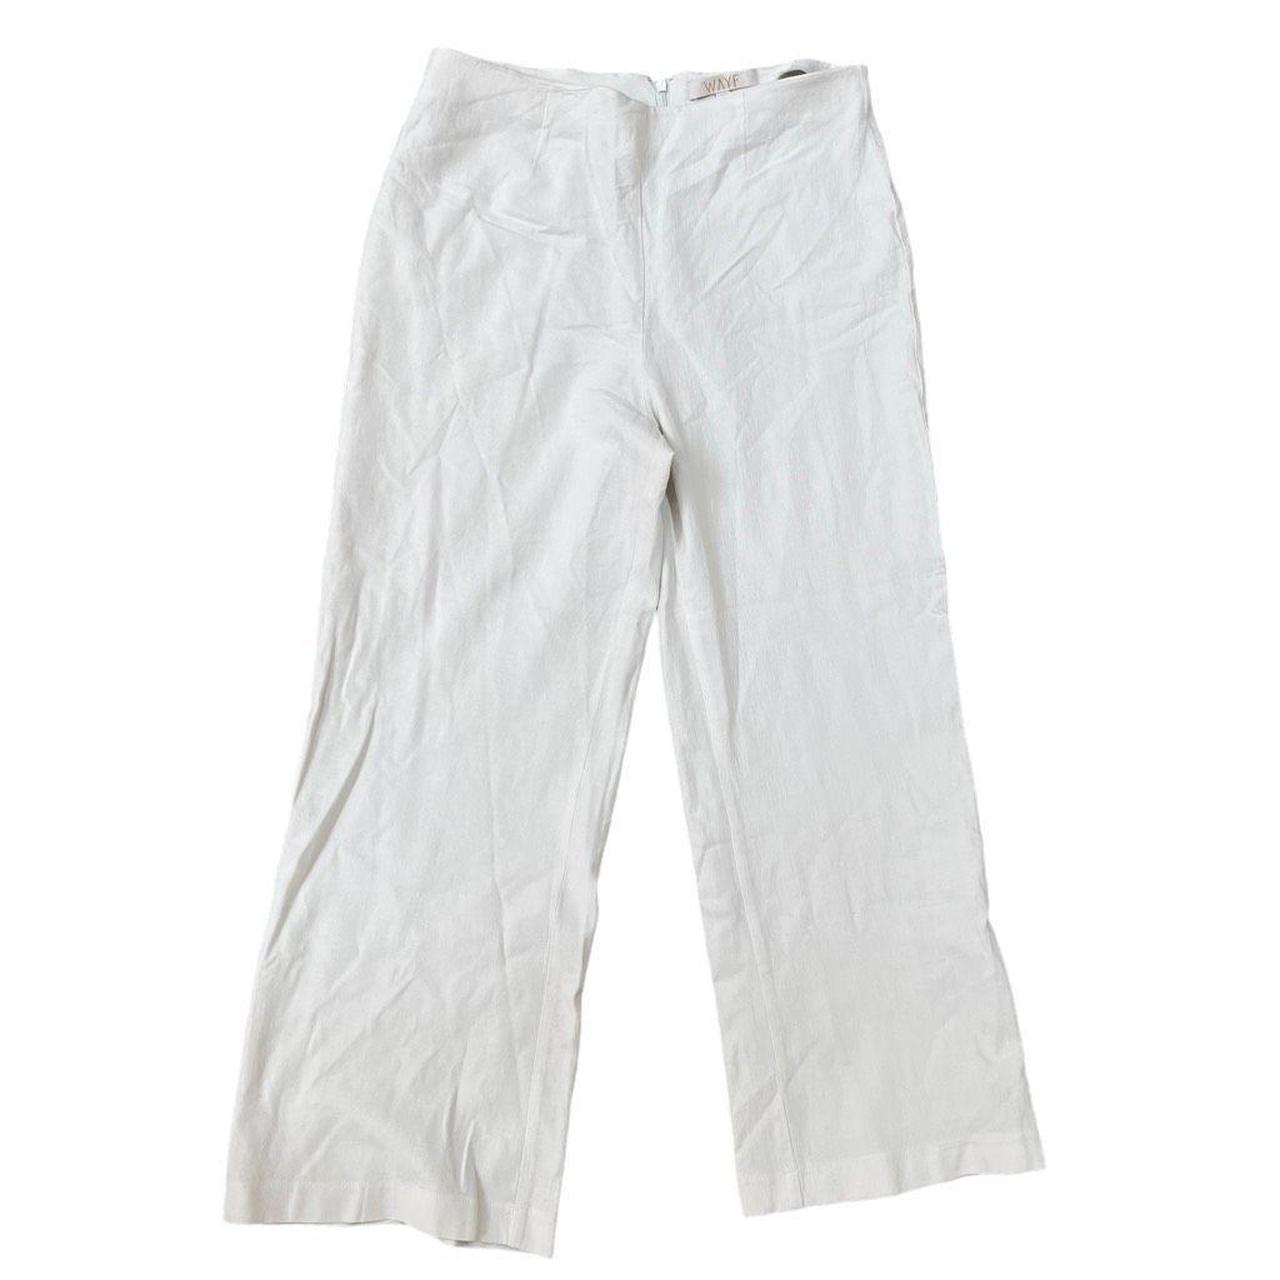 Wayf linen blend cropped summer pants size M back - Depop